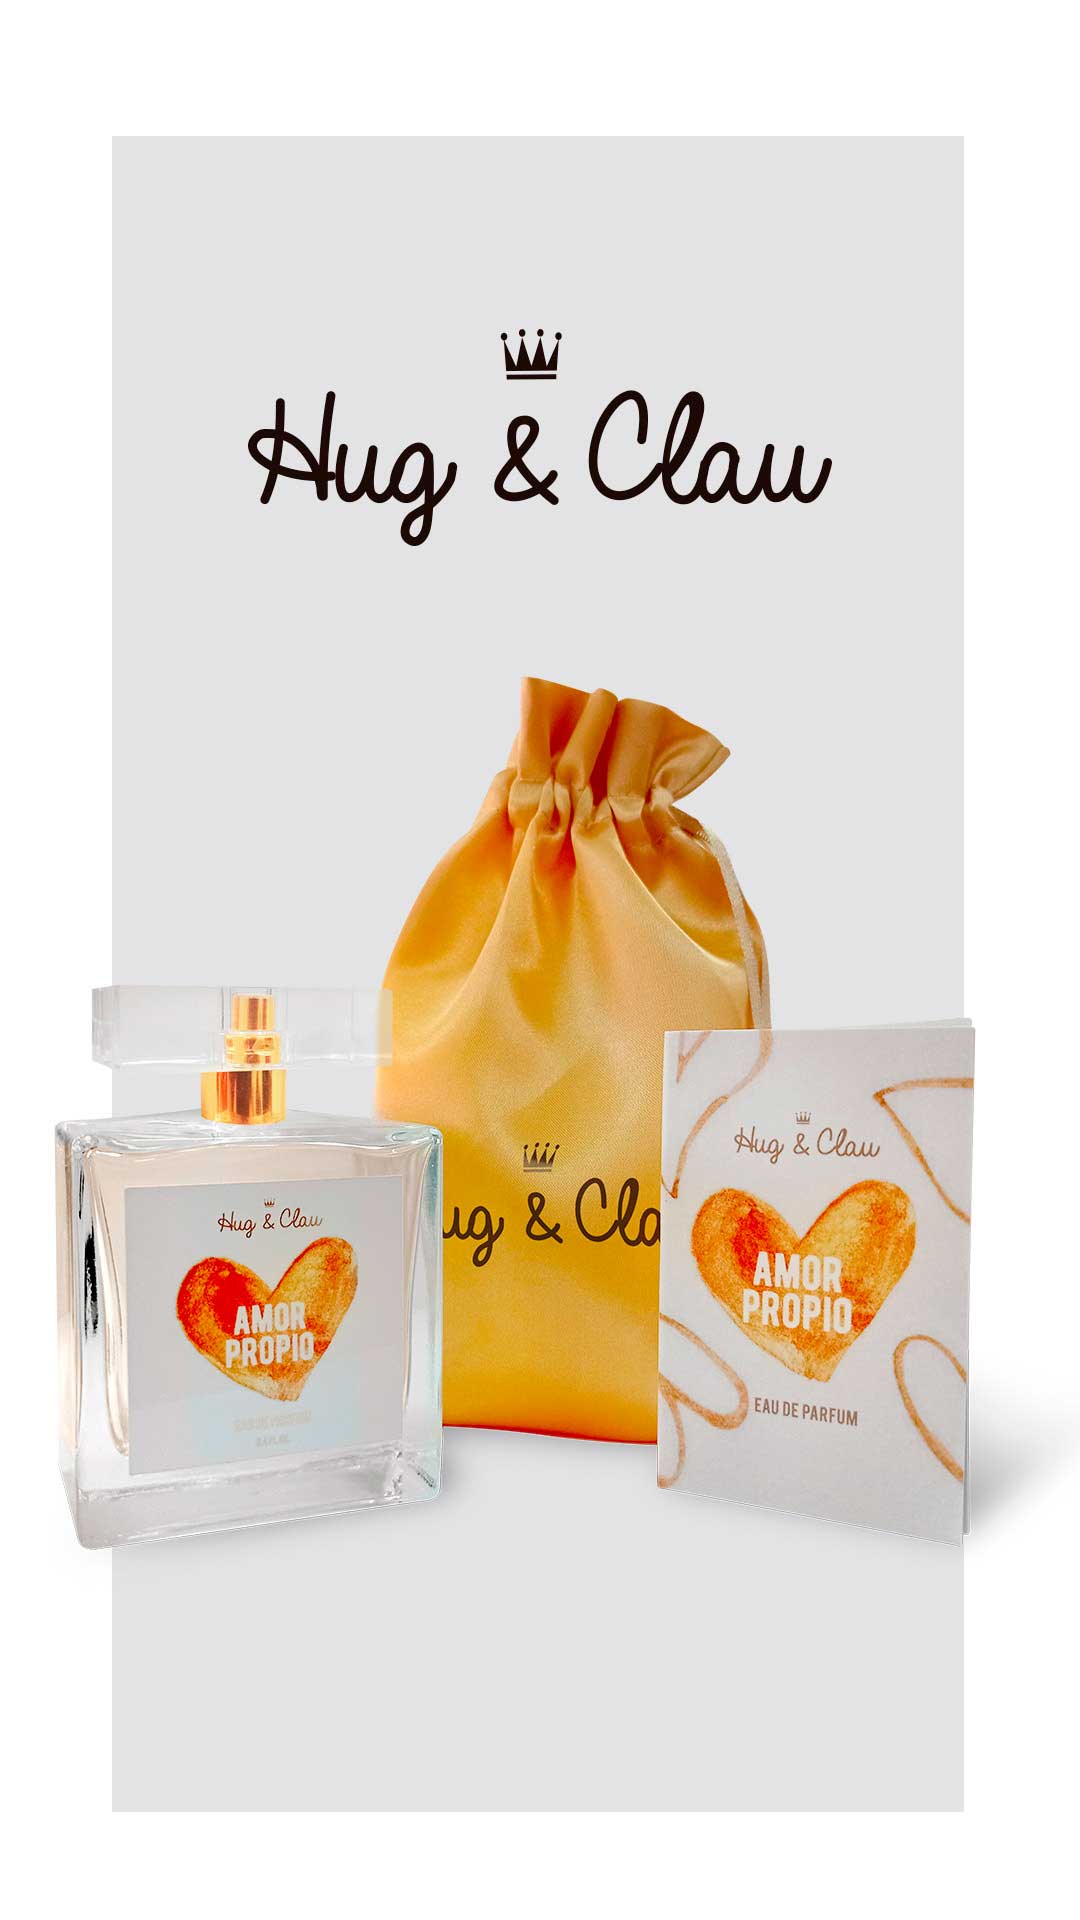 Proyecto Hug & Clau - Esenssi Aromas: Fabrica de Perfumes de Equivalencia